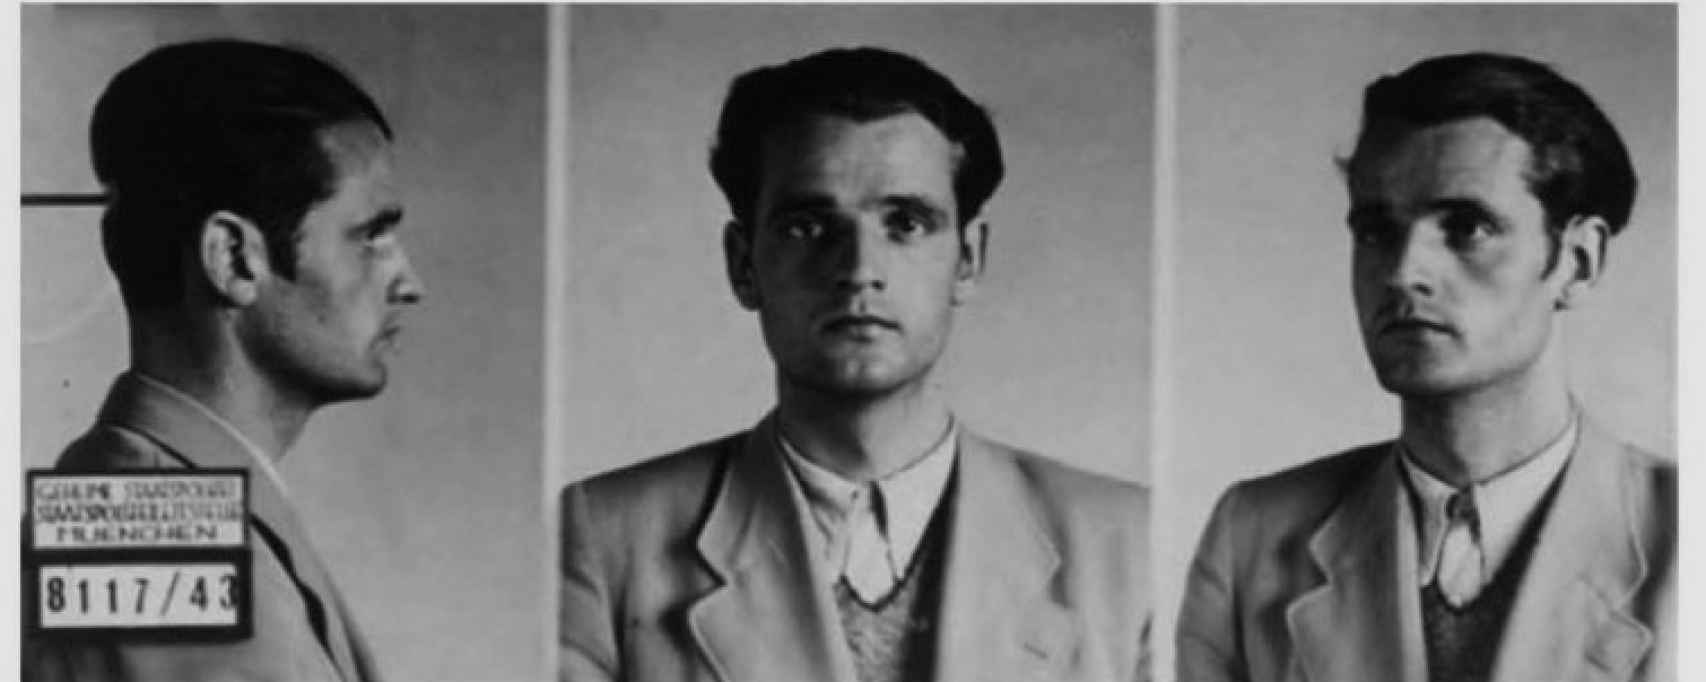 Ficha de la Gestapo de Hans Scholl